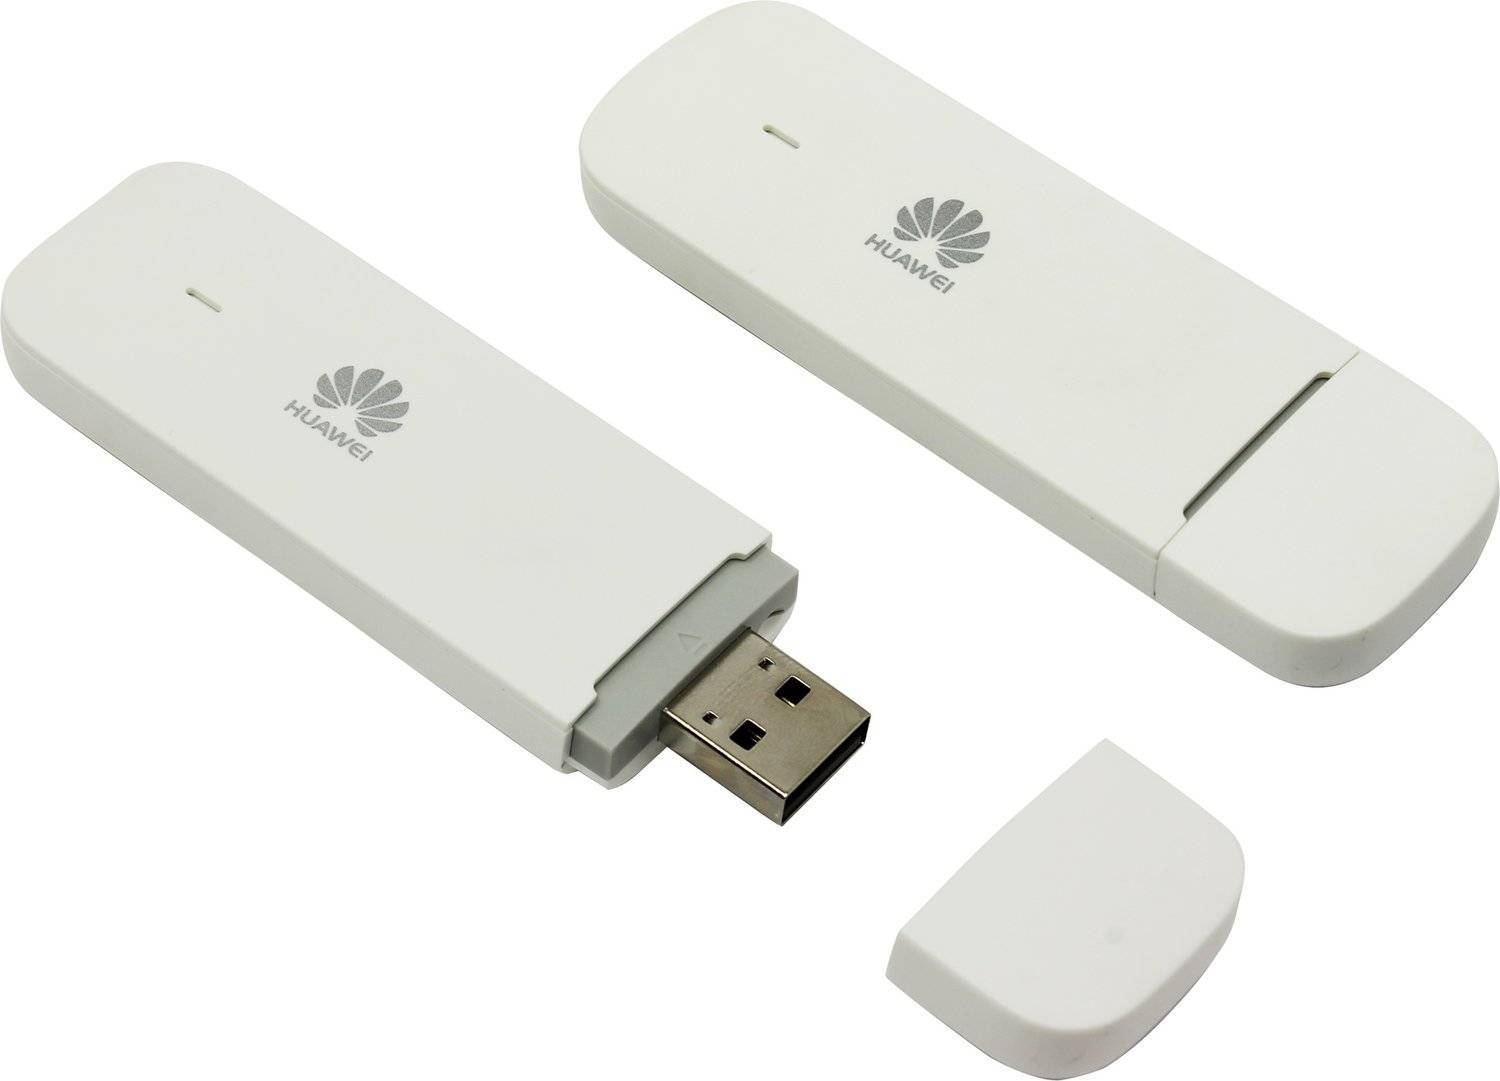 Huawei e3372h купить. Модем Huawei e3372h-153. USB модем Huawei e3372. USB модем 4g Huawei e3372h. USB модем Huawei e3372h-153.